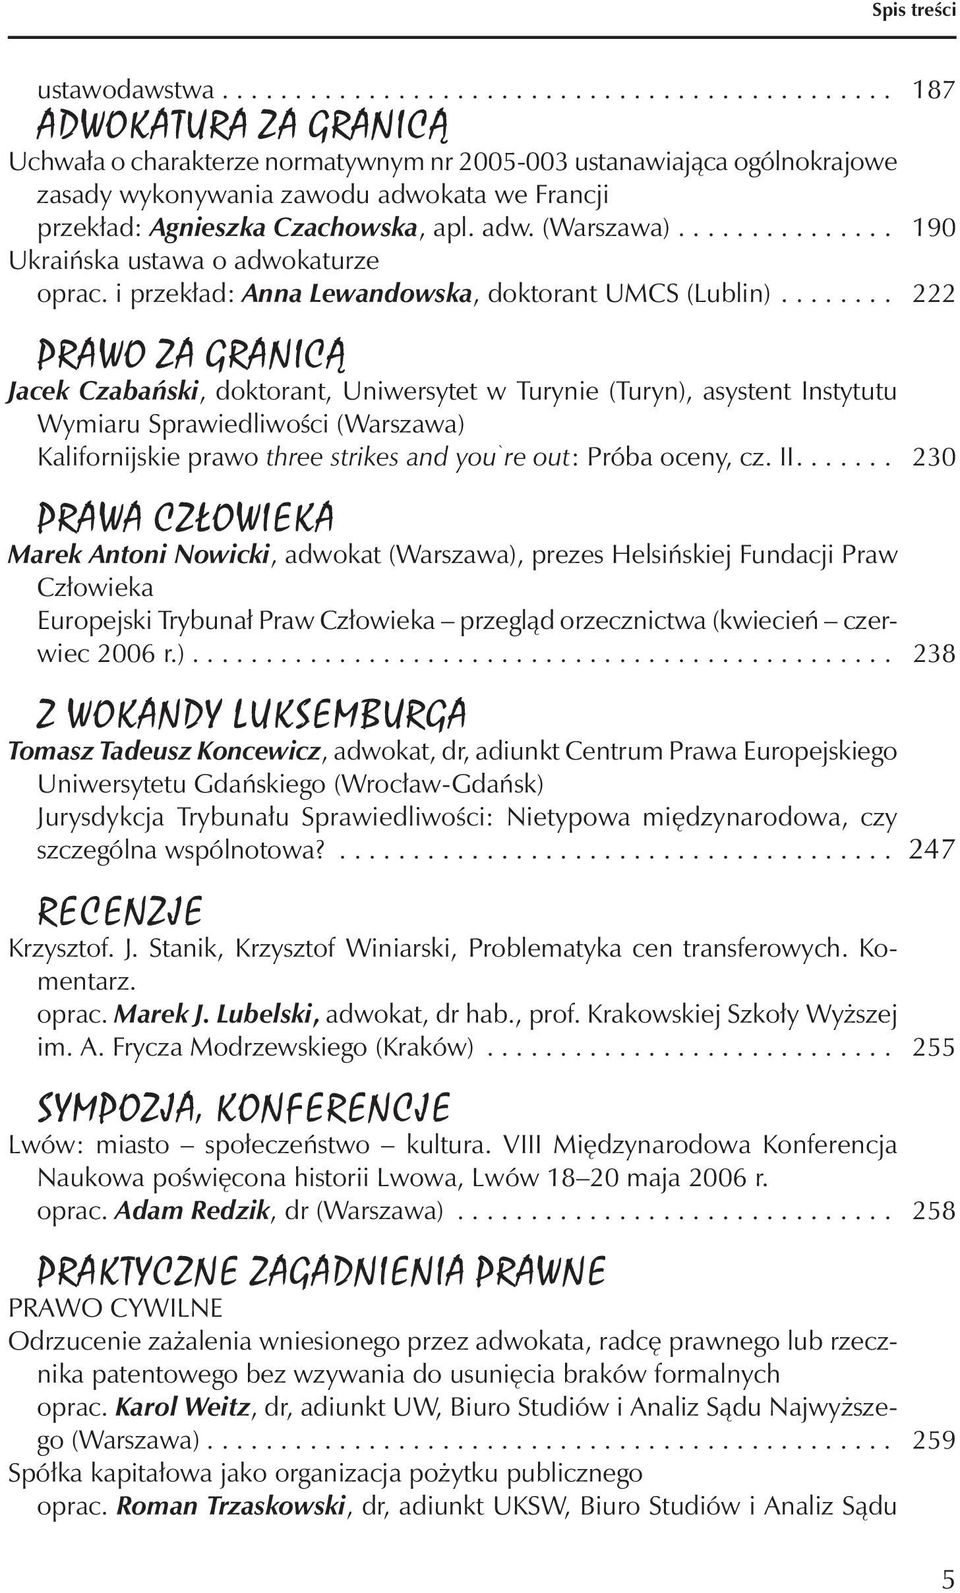 adw. (Warszawa)............... 190 Ukraińska ustawa o adwokaturze oprac. i przekład: Anna Lewandowska, doktorant UMCS (Lublin).